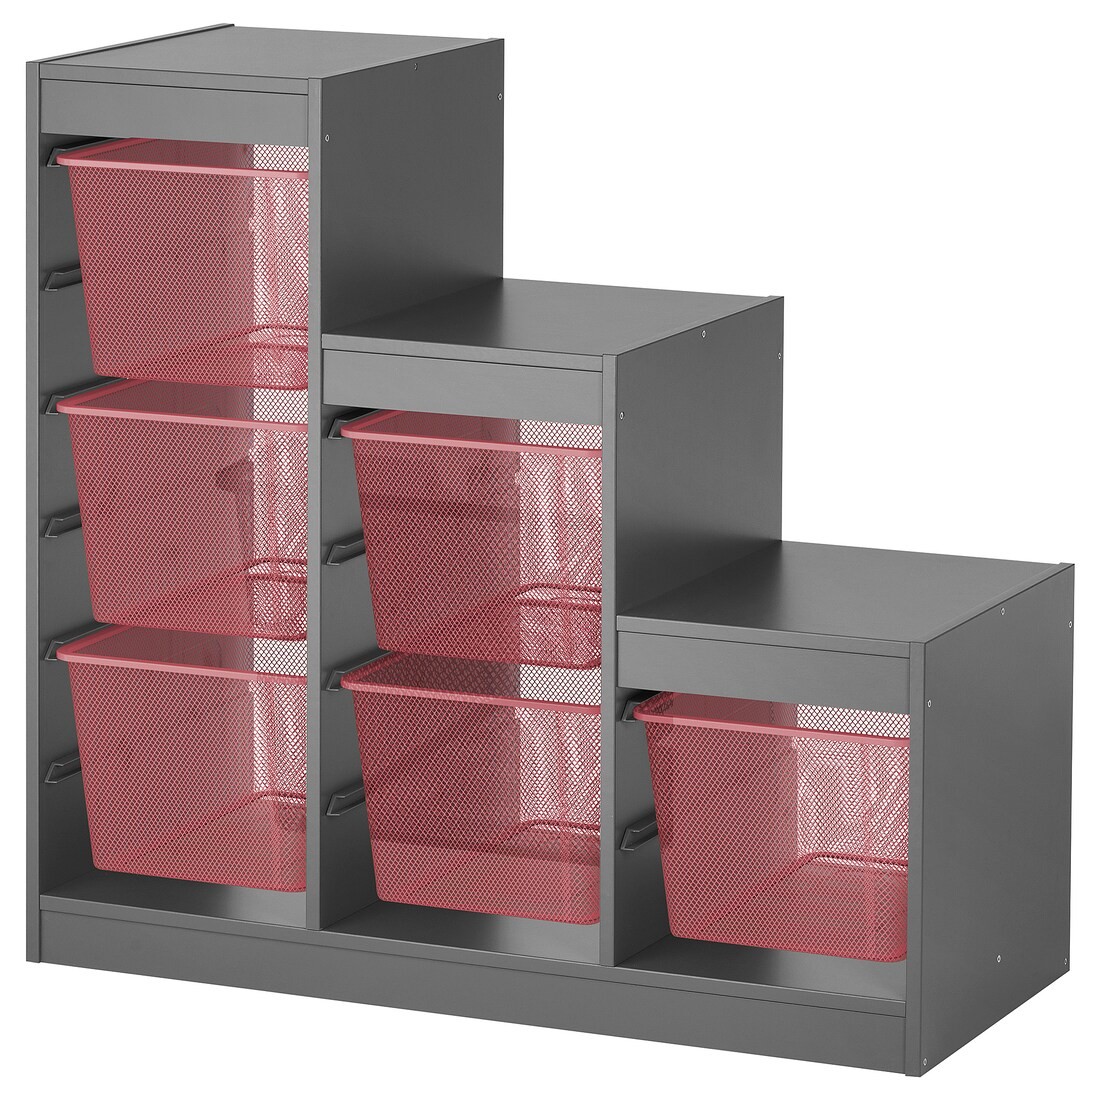 TROFAST Комбинация для хранения + контейнеры, серый / светло-красный, 99x44x94 см